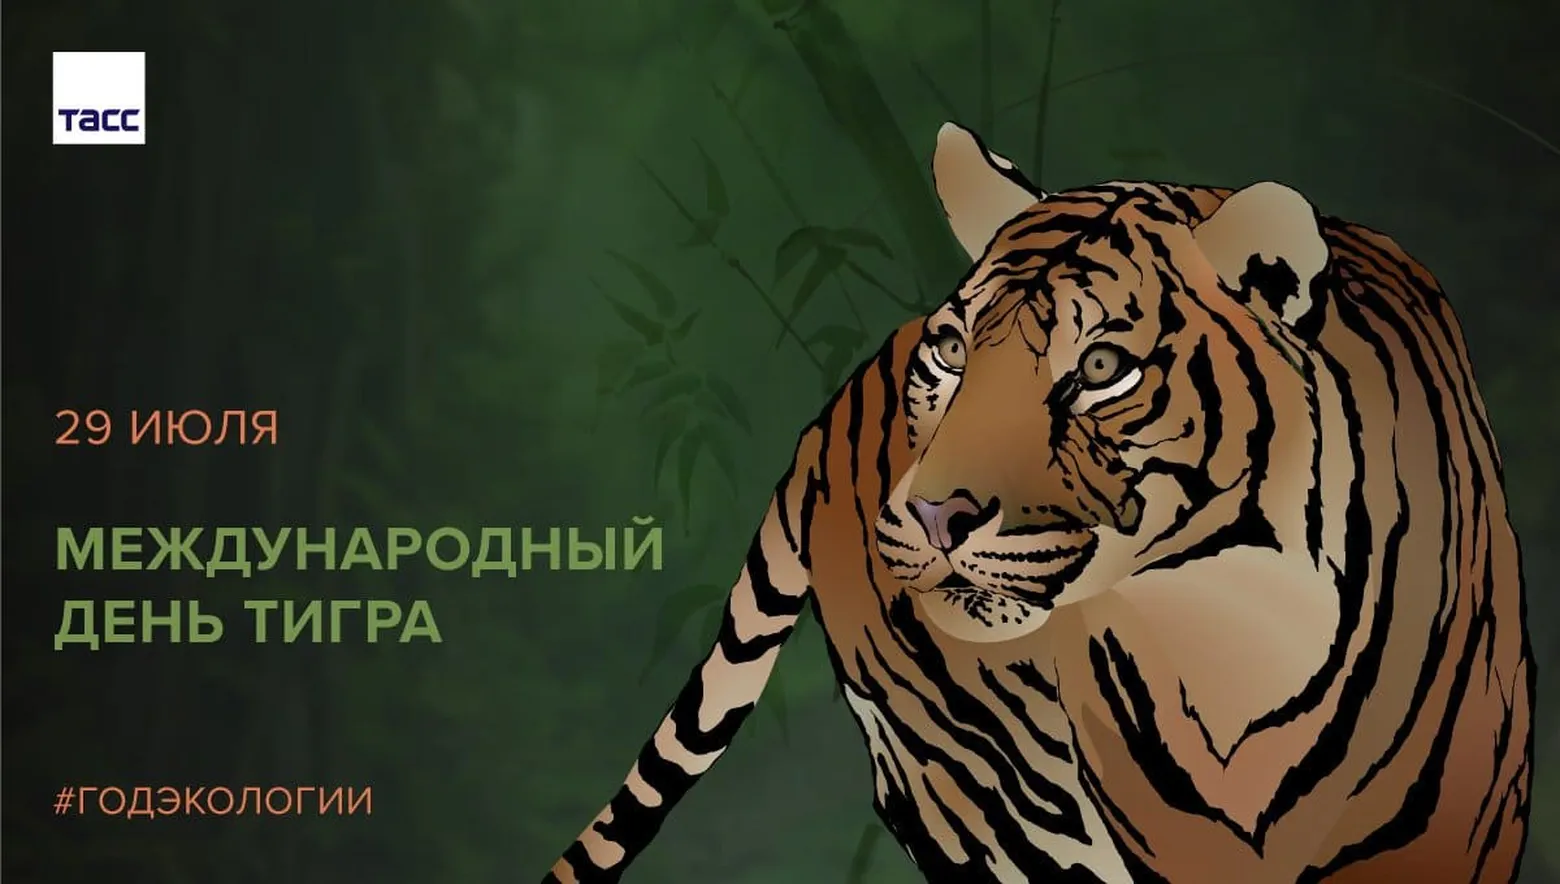 Картинка с днем тигра в Вайбер или Вацап - скачать бесплатно на otkrytkivsem.ru